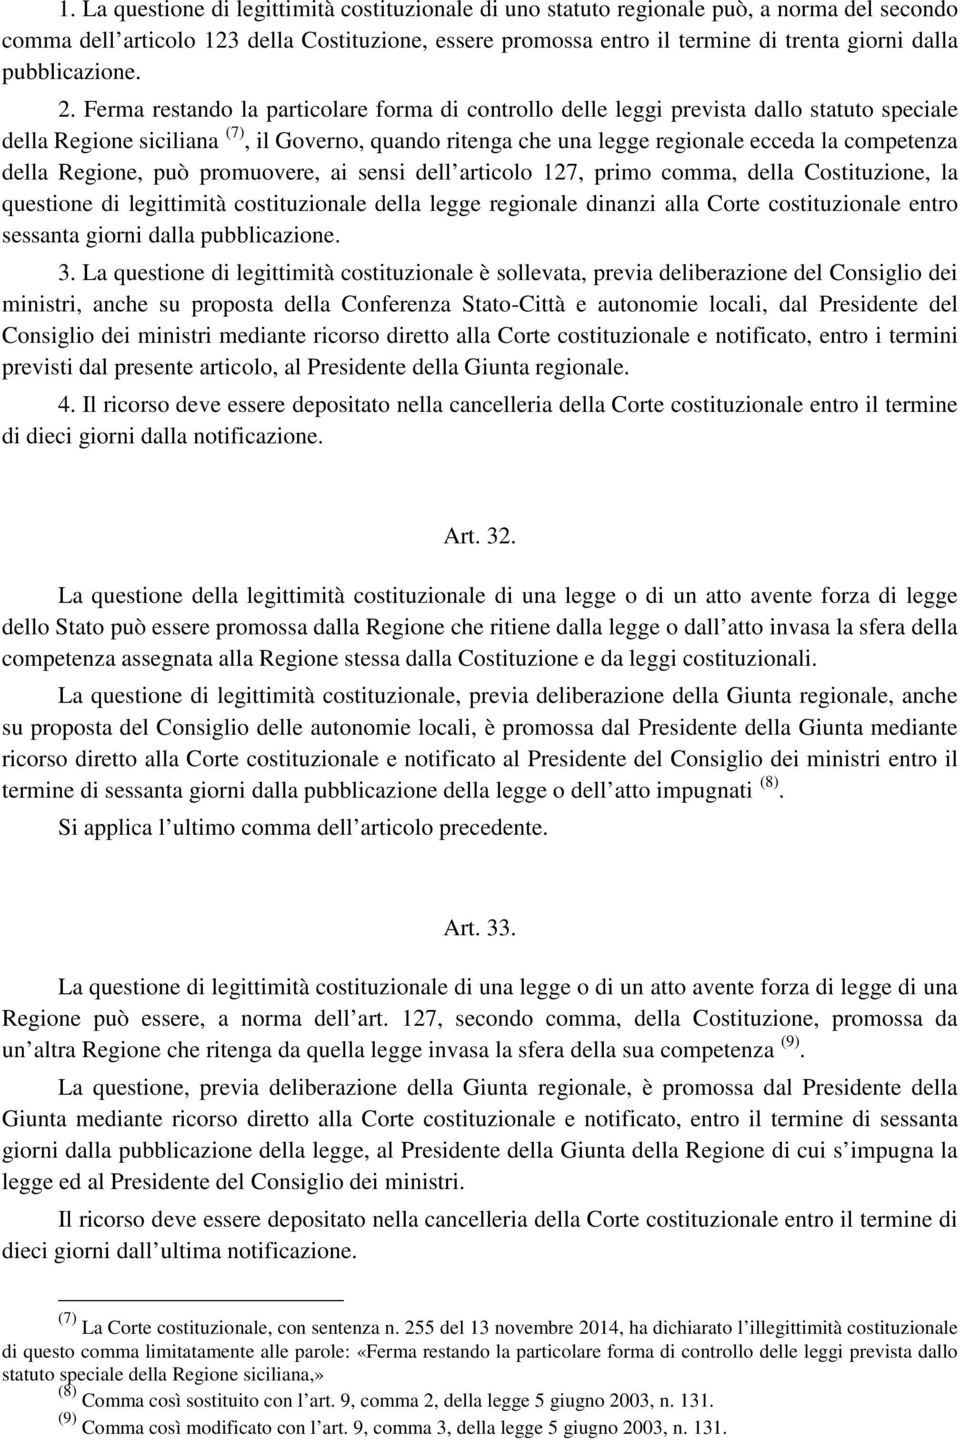 Ferma restando la particolare forma di controllo delle leggi prevista dallo statuto speciale della Regione siciliana (7), il Governo, quando ritenga che una legge regionale ecceda la competenza della